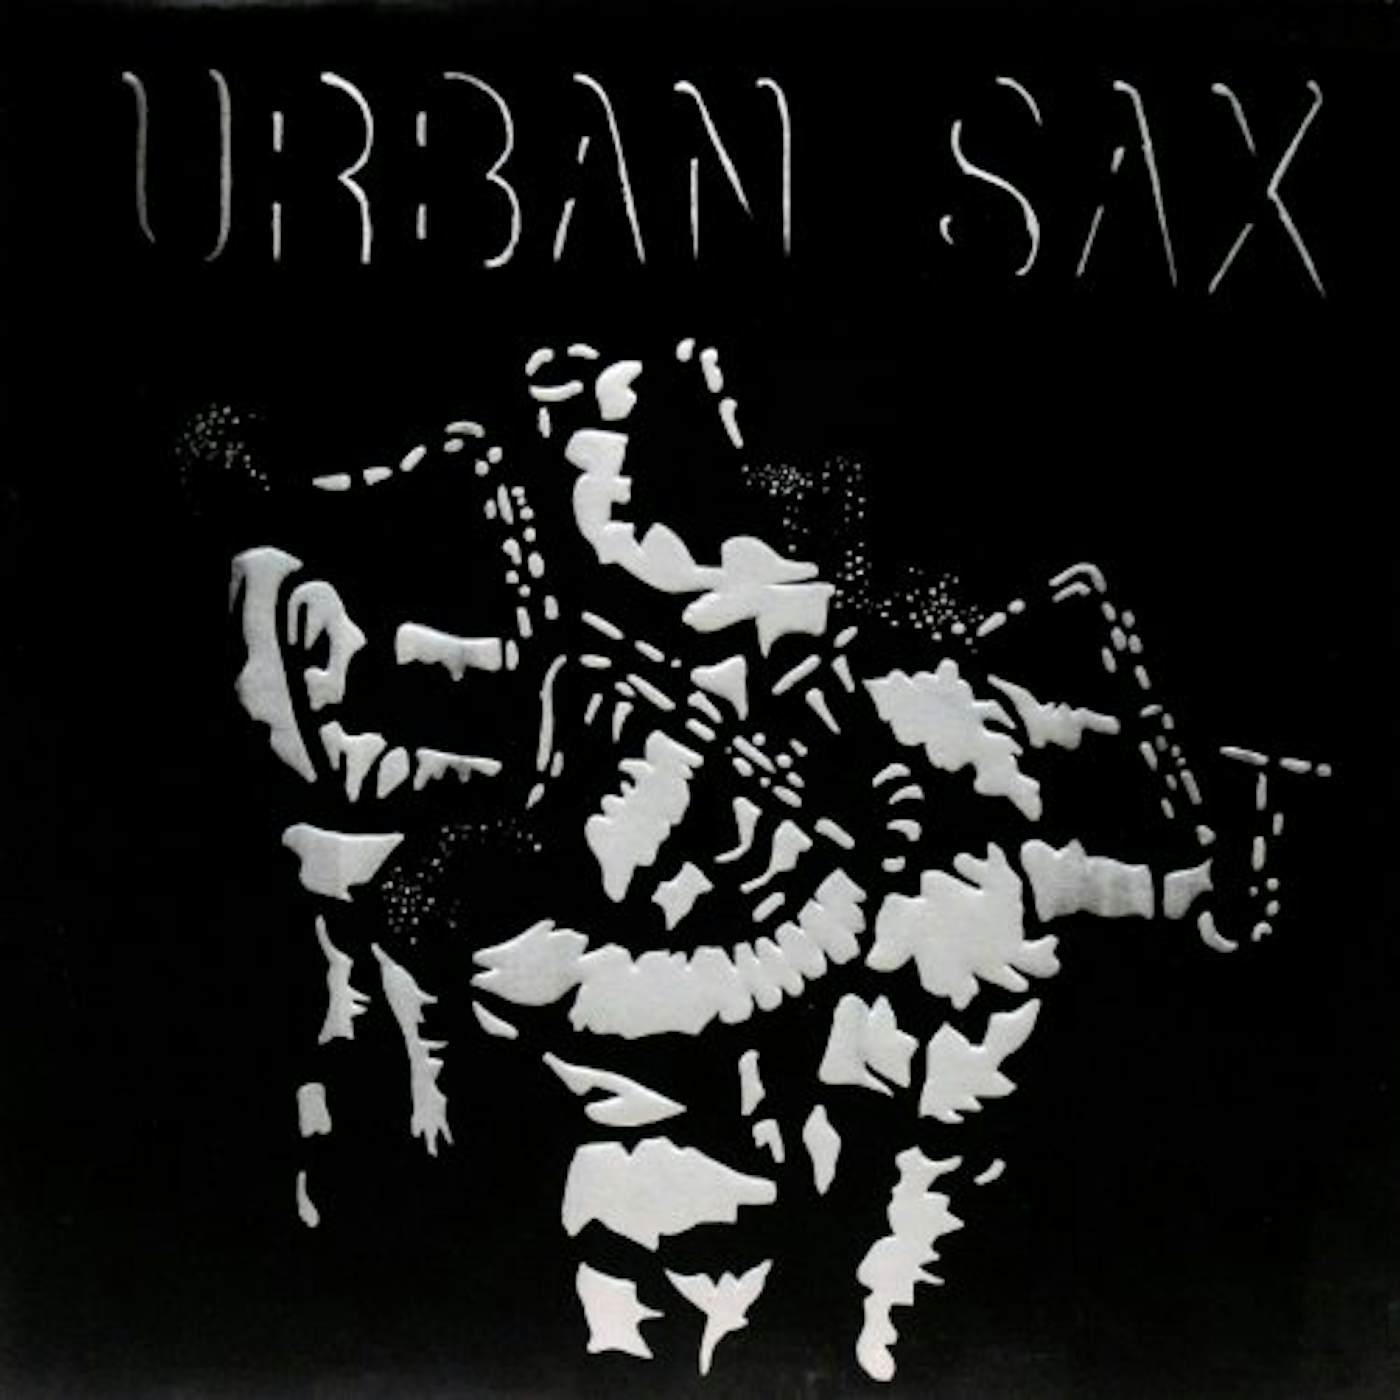 Urban Sax Fraction Sur Le Temps Vinyl Record